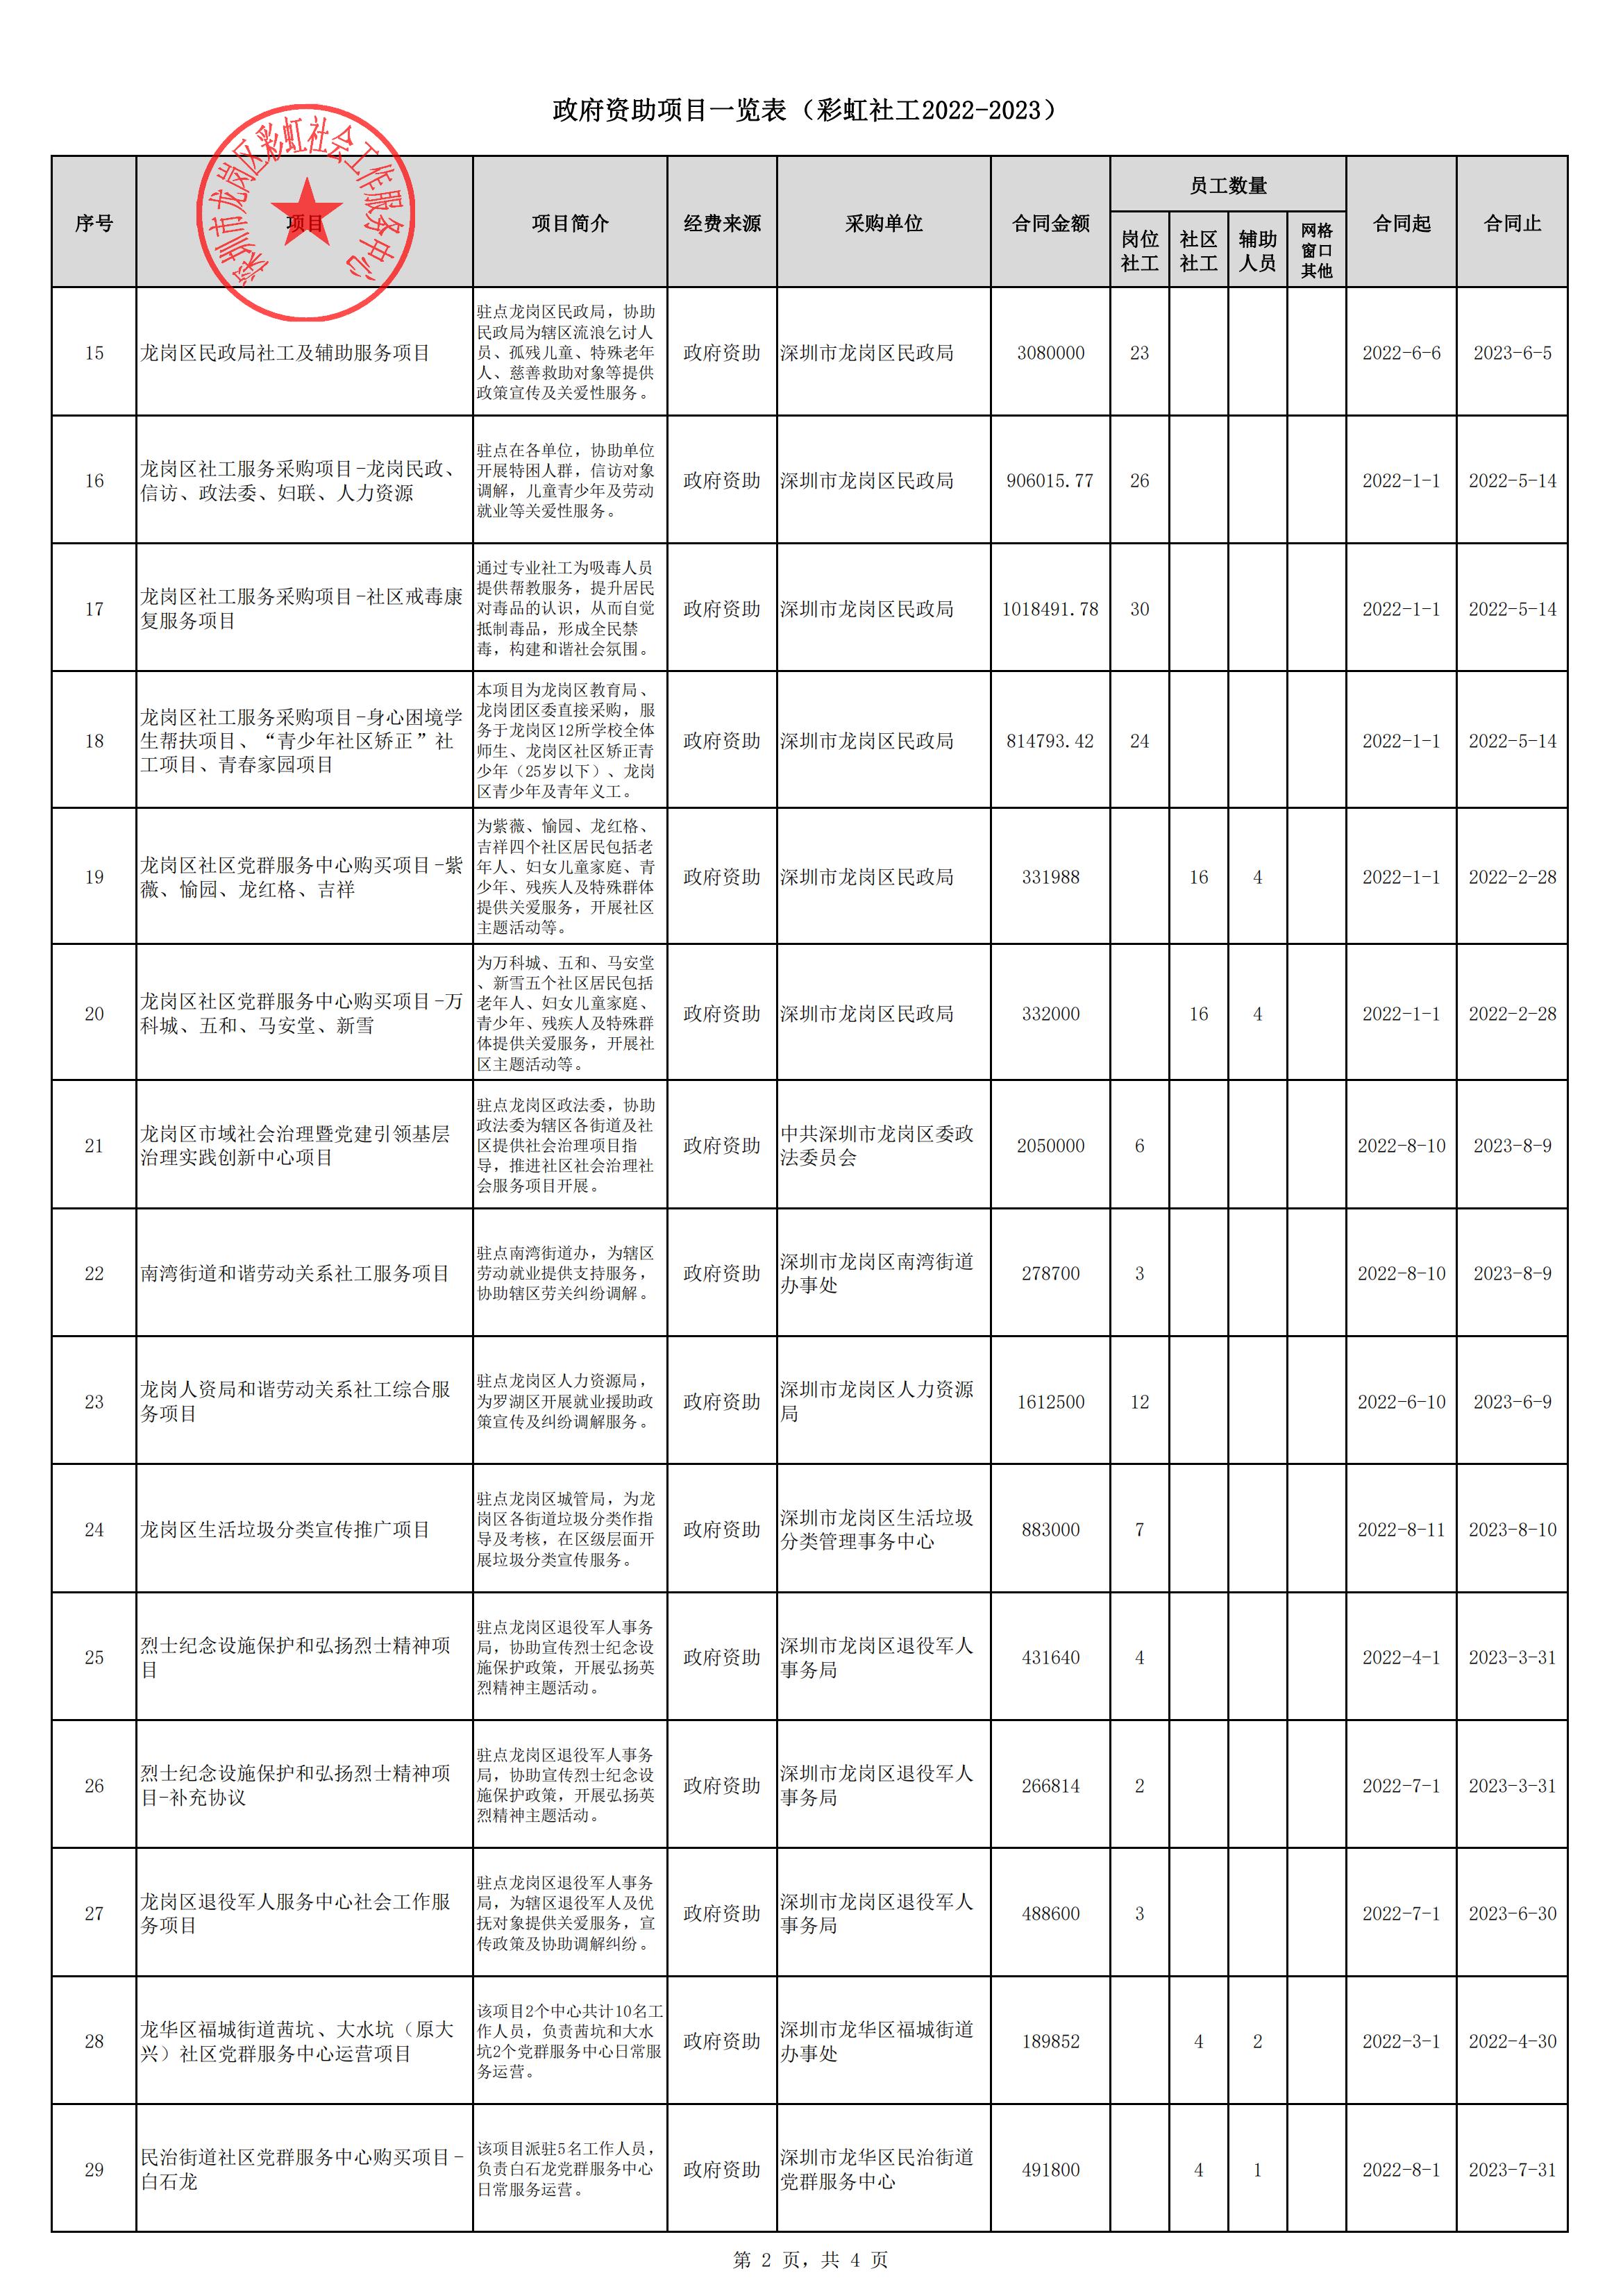 彩虹社工2022年度政府资助项目一览表_01.jpg